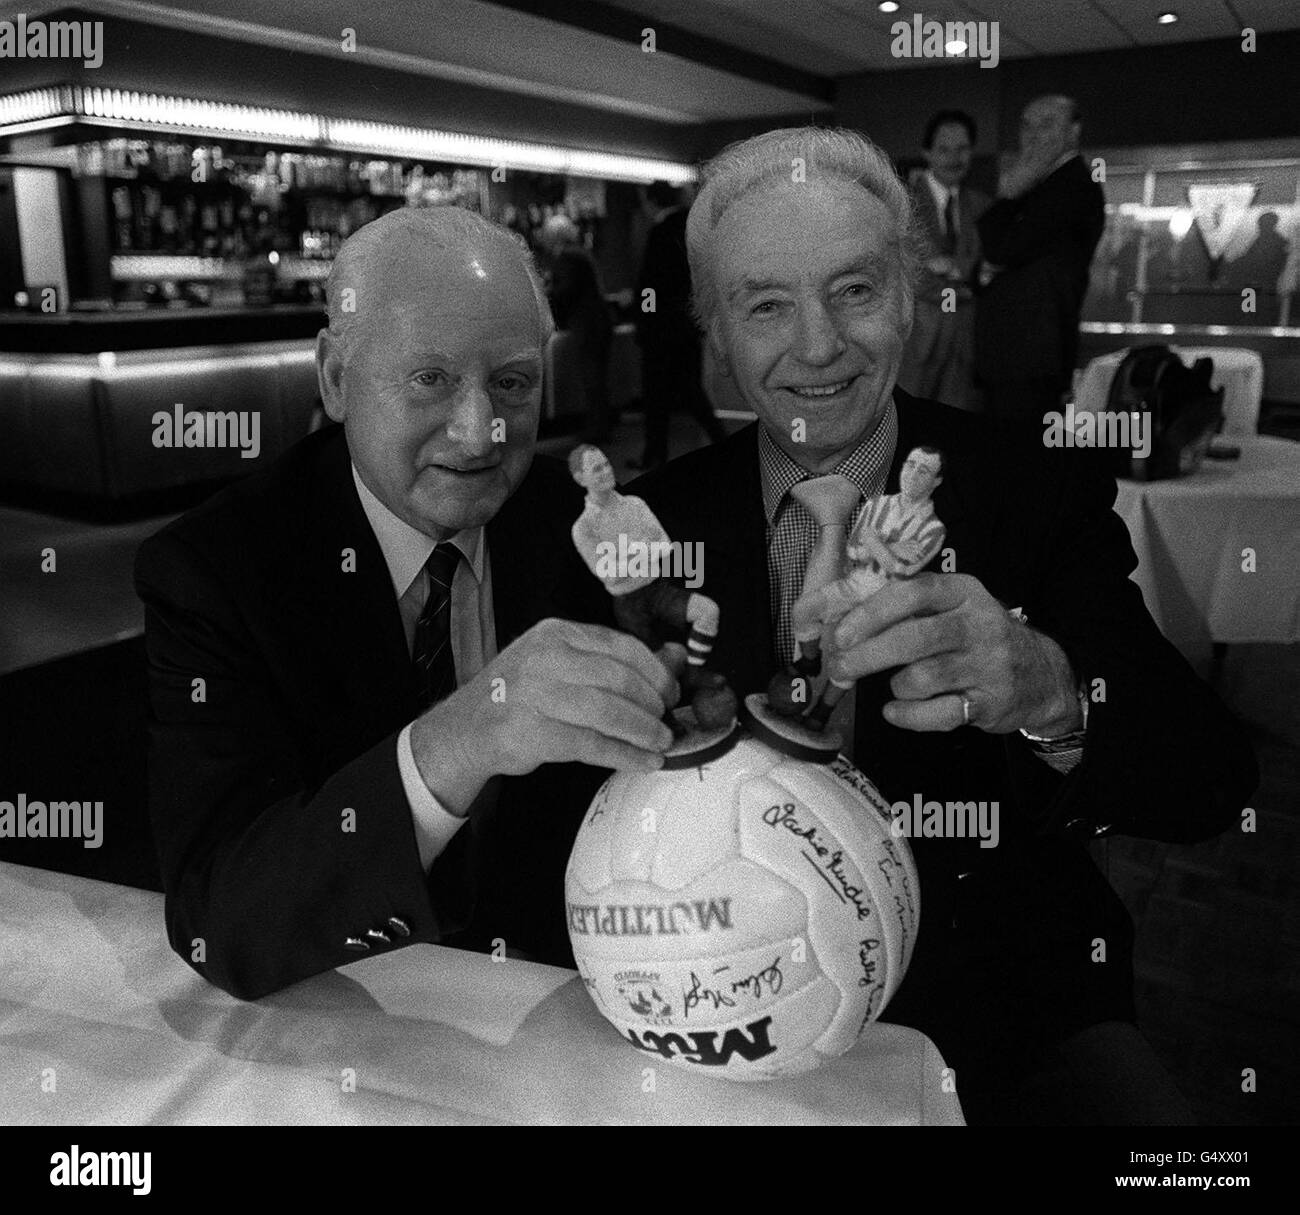 Deux des stars du football d'Angleterre d'antan - le légendaire Tom Finney (à gauche) et Sir Stanley Matthews, photographiés à Old Trafford lors du lancement de l'Art of Sport qui rend hommage aux anciens géants du jeu. Banque D'Images